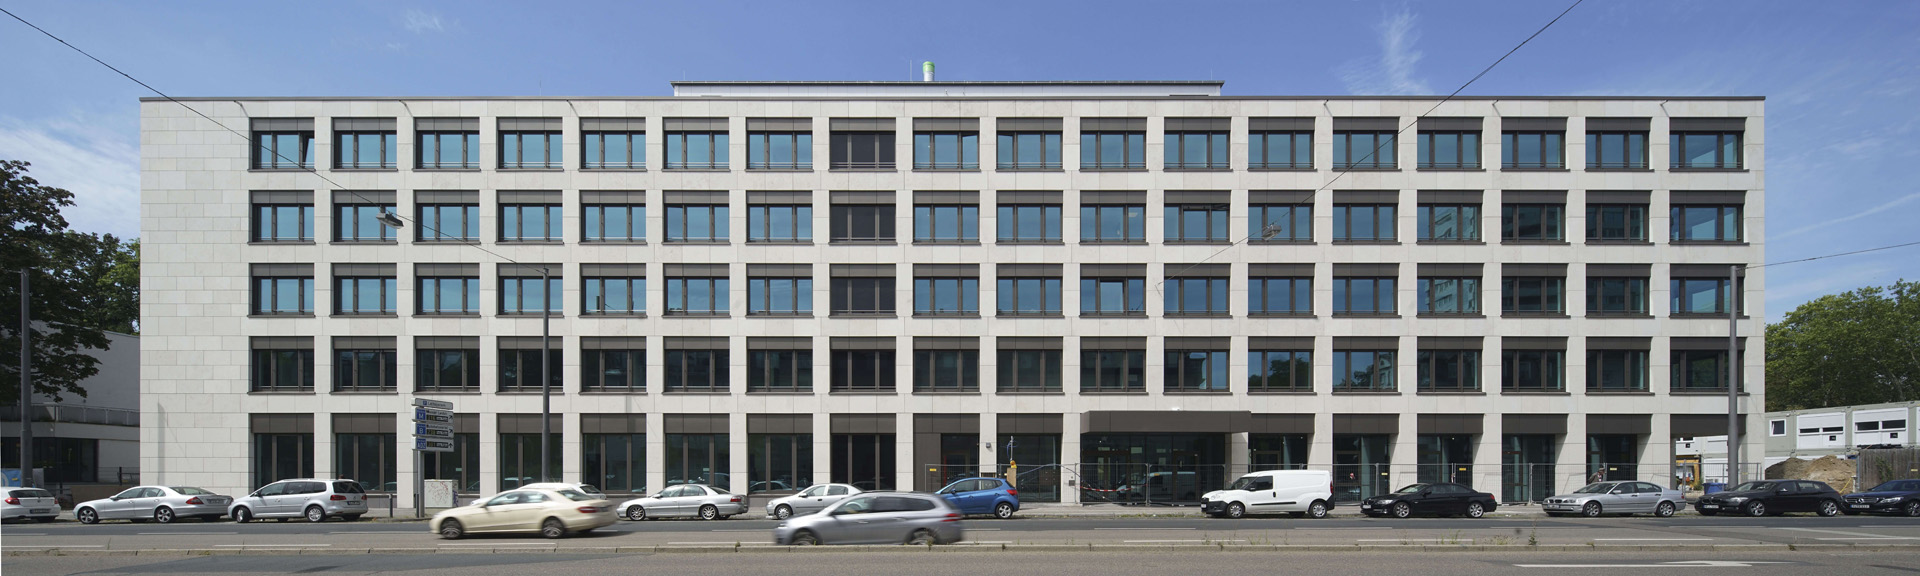 Hochschulgebäude mit Aluminium Fensterelementen in Frankfurt am Main, Vorderansicht